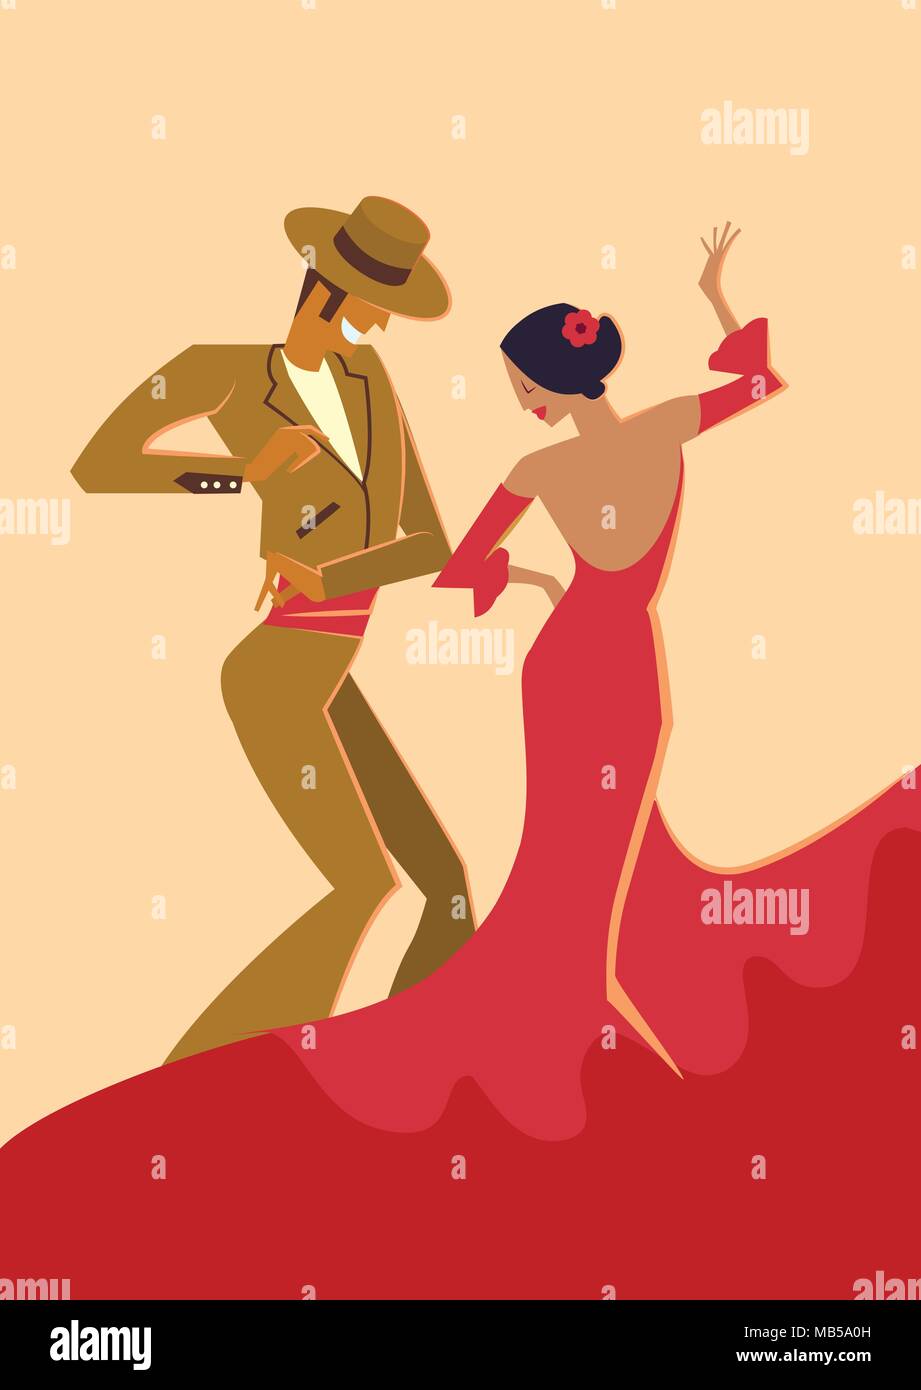 Danseurs De Flamenco Espagnol Illustration Image Vectorielle Stock Alamy